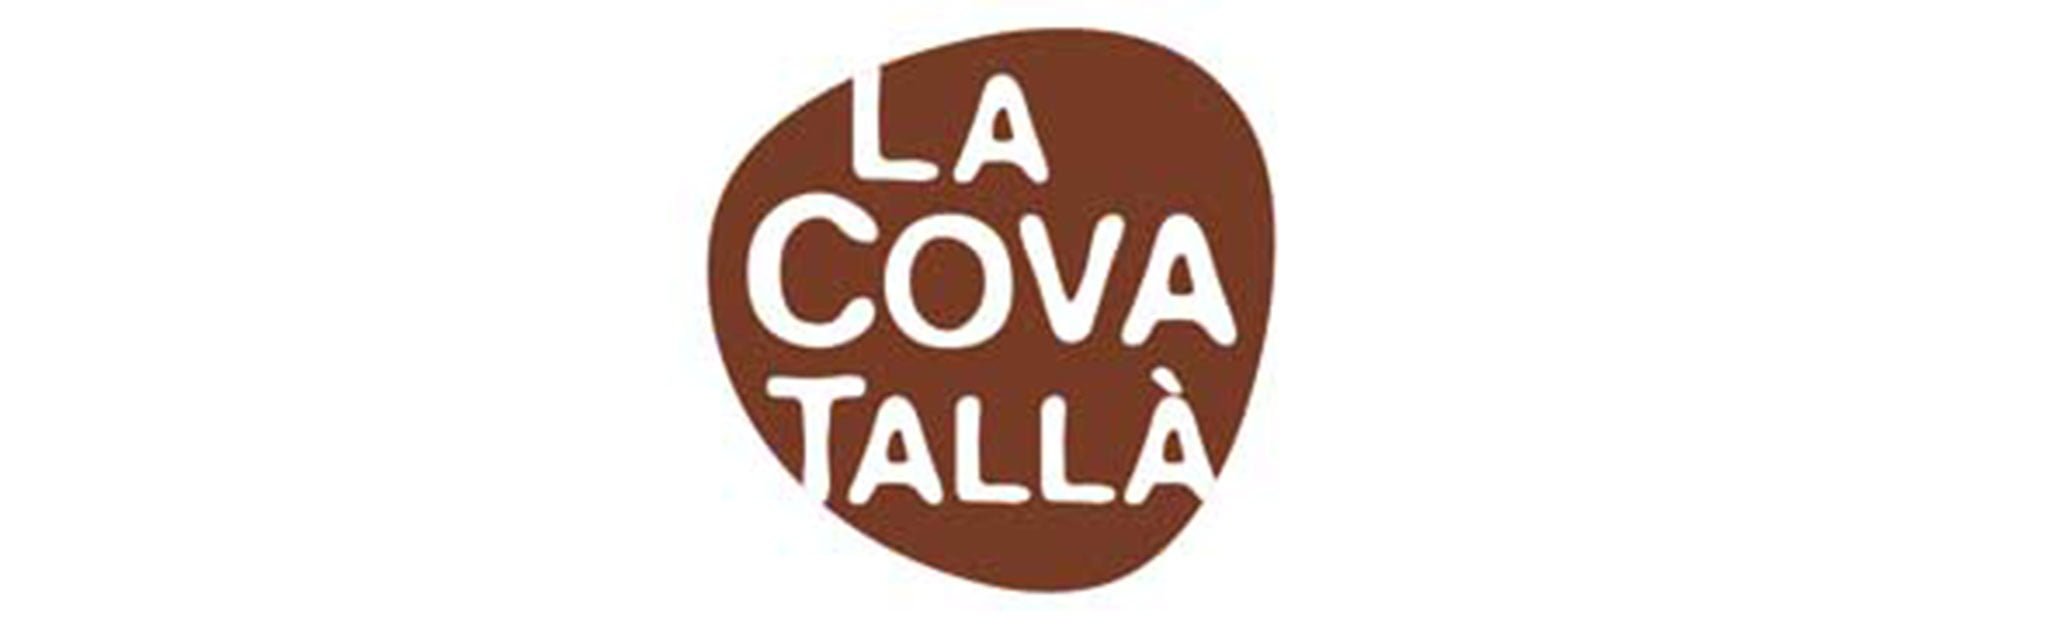 Logotipo La Cova Tallà